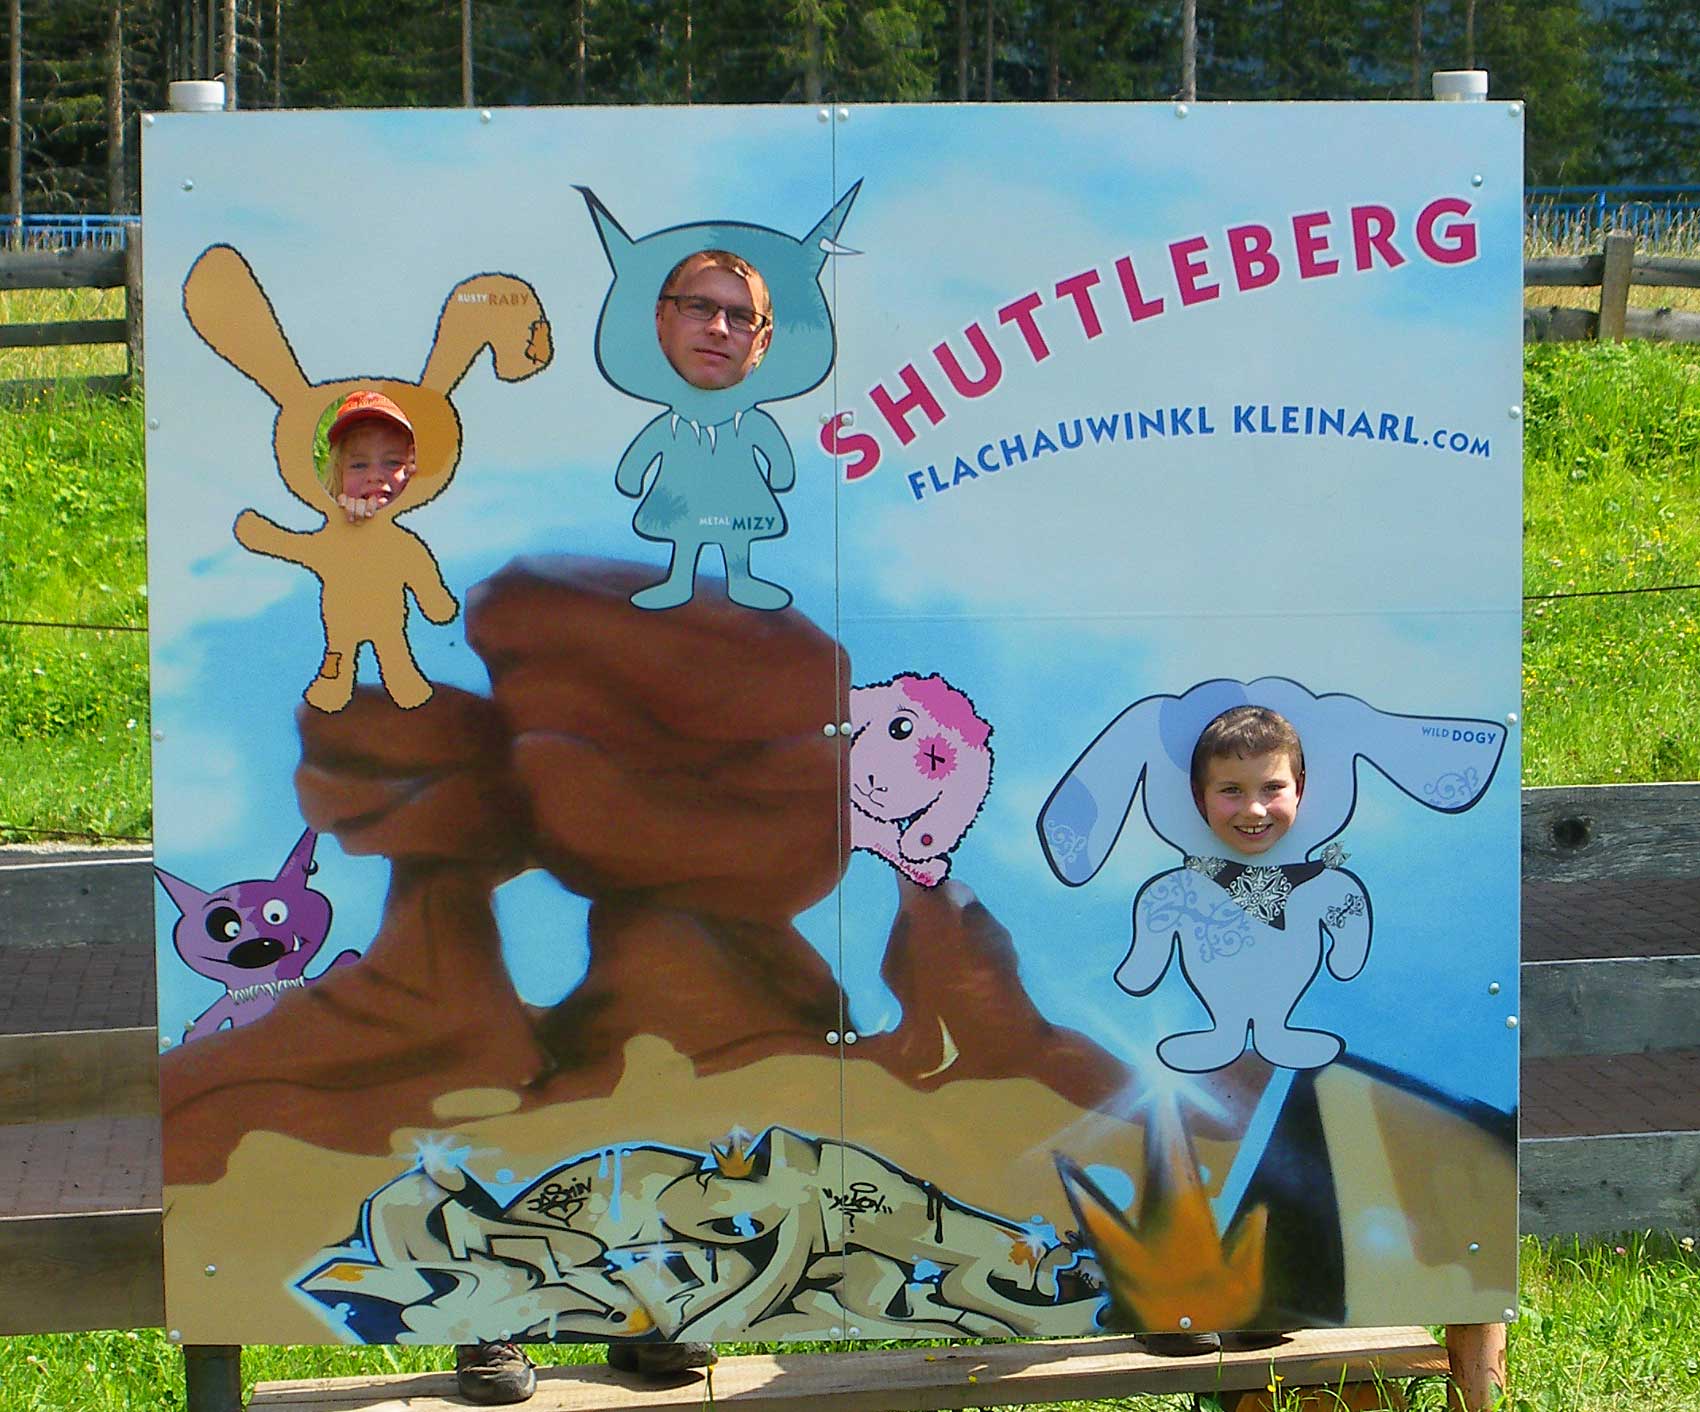 Shuttleberg Kleinarl